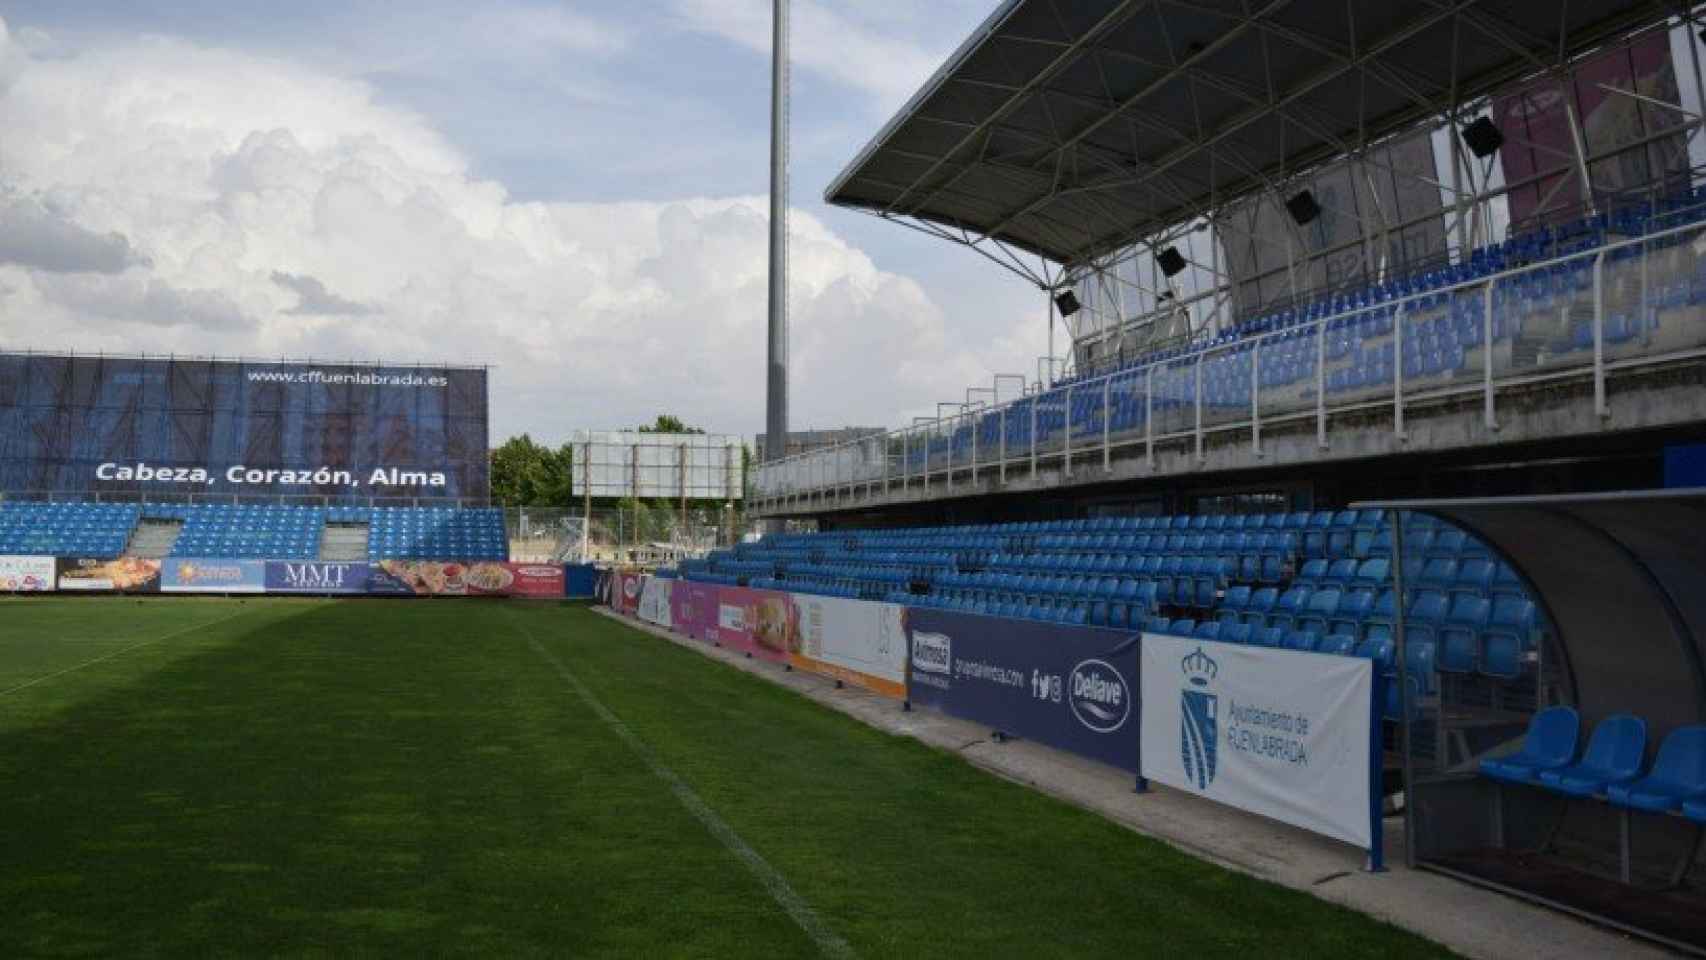 Estadio Fernando Torres, la casa del Fuenlabrada | Foto: cffuenlabrada.es